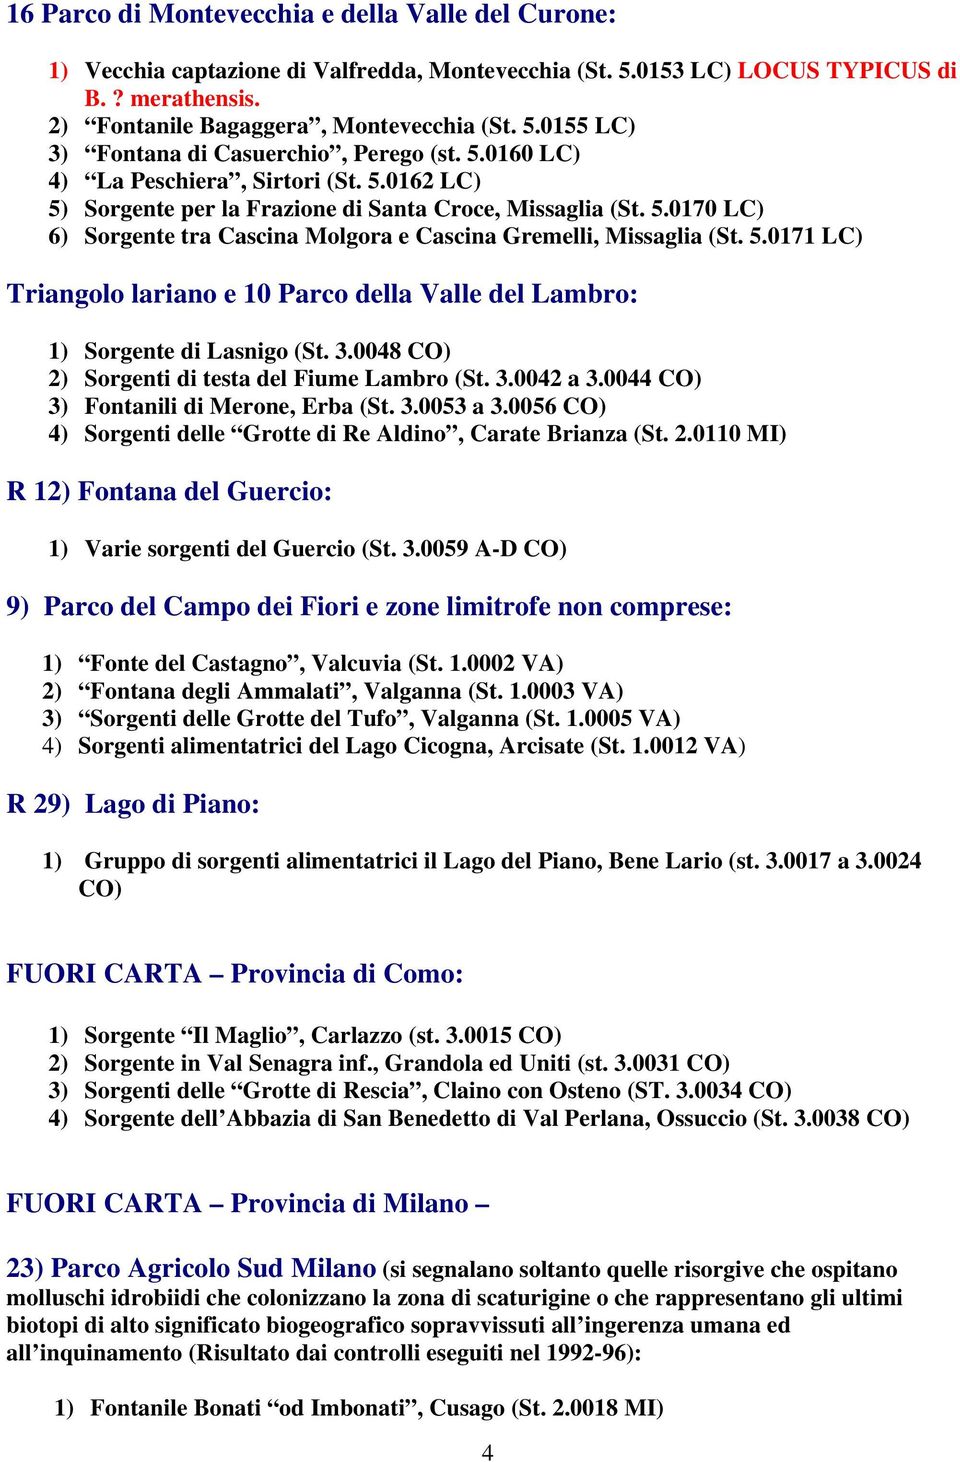 3.0048 CO) 2) Sorgenti di testa del Fiume Lambro (St. 3.0042 a 3.0044 CO) 3) Fontanili di Merone, Erba (St. 3.0053 a 3.0056 CO) 4) Sorgenti delle Grotte di Re Aldino, Carate Brianza (St. 2.0110 MI) R 12) Fontana del Guercio: 1) Varie sorgenti del Guercio (St.